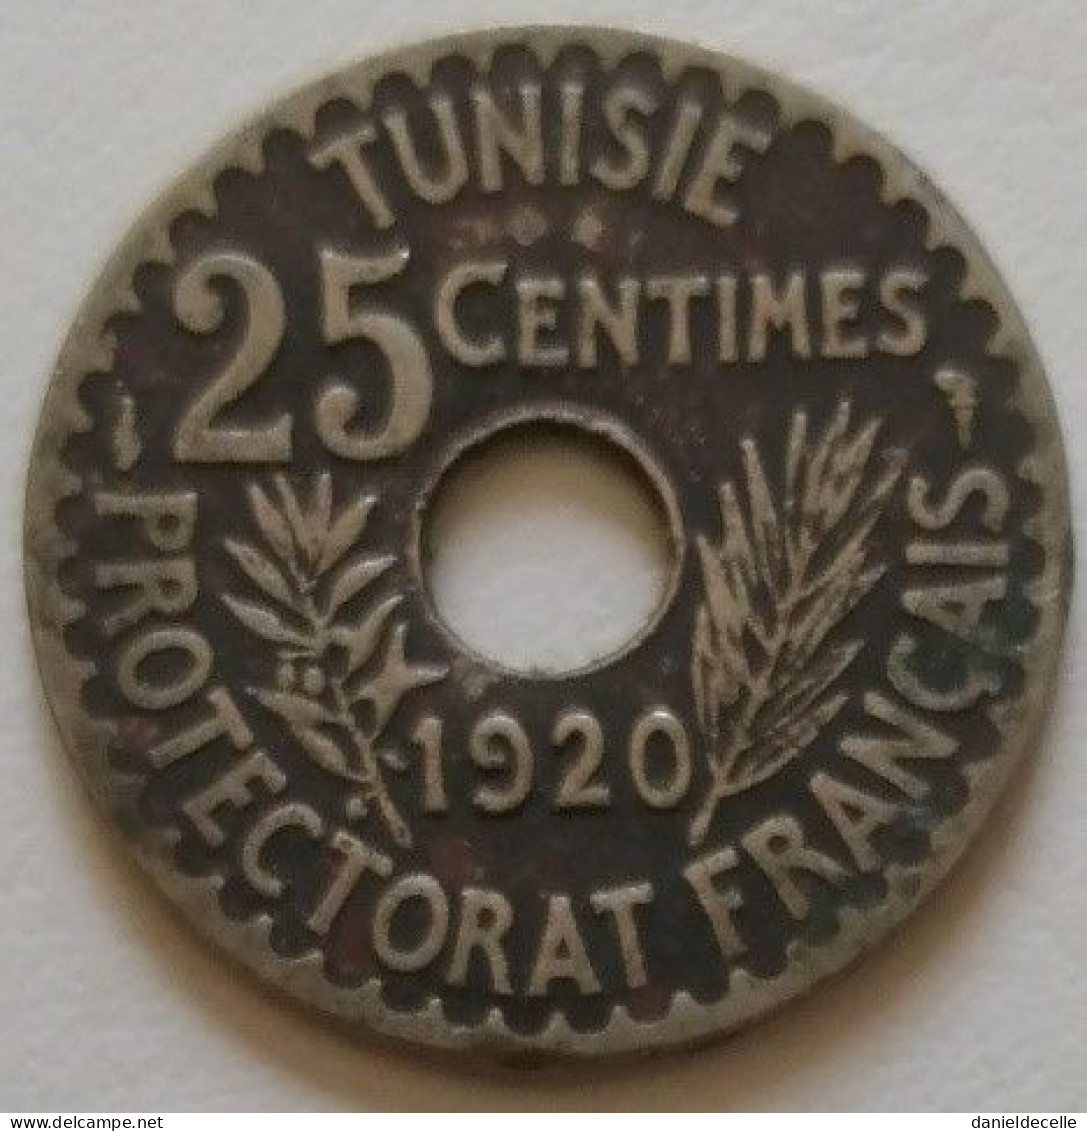 25 Centimes Tunisie 1338 (1920) - Tunisia